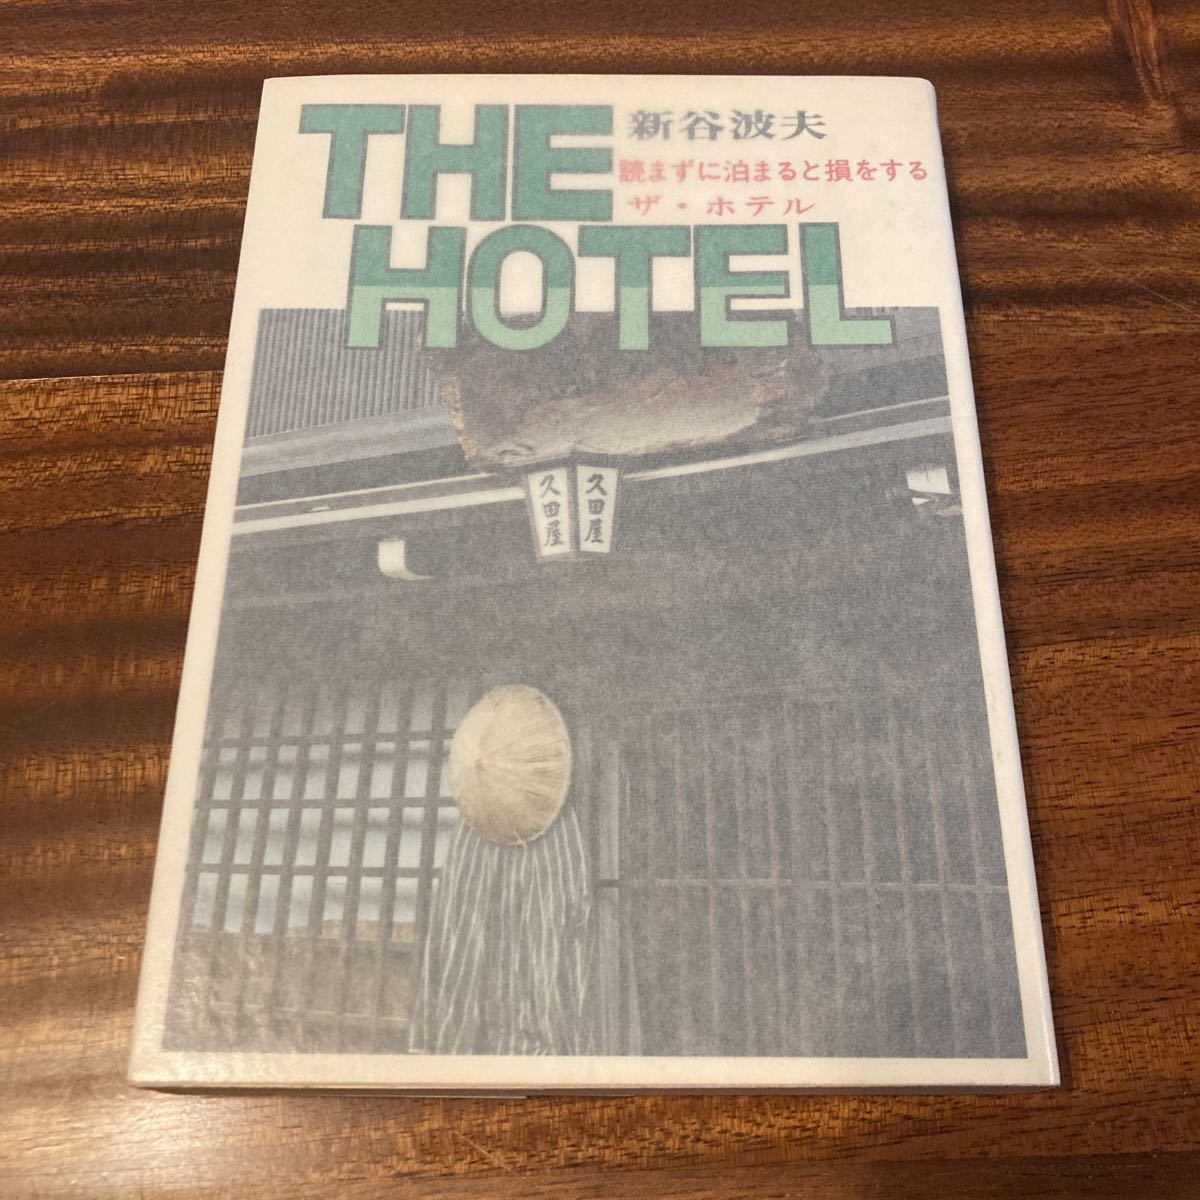 THE HOTEL ザ・ホテル読まずに泊まると損をする新谷波夫北斗書房1979年